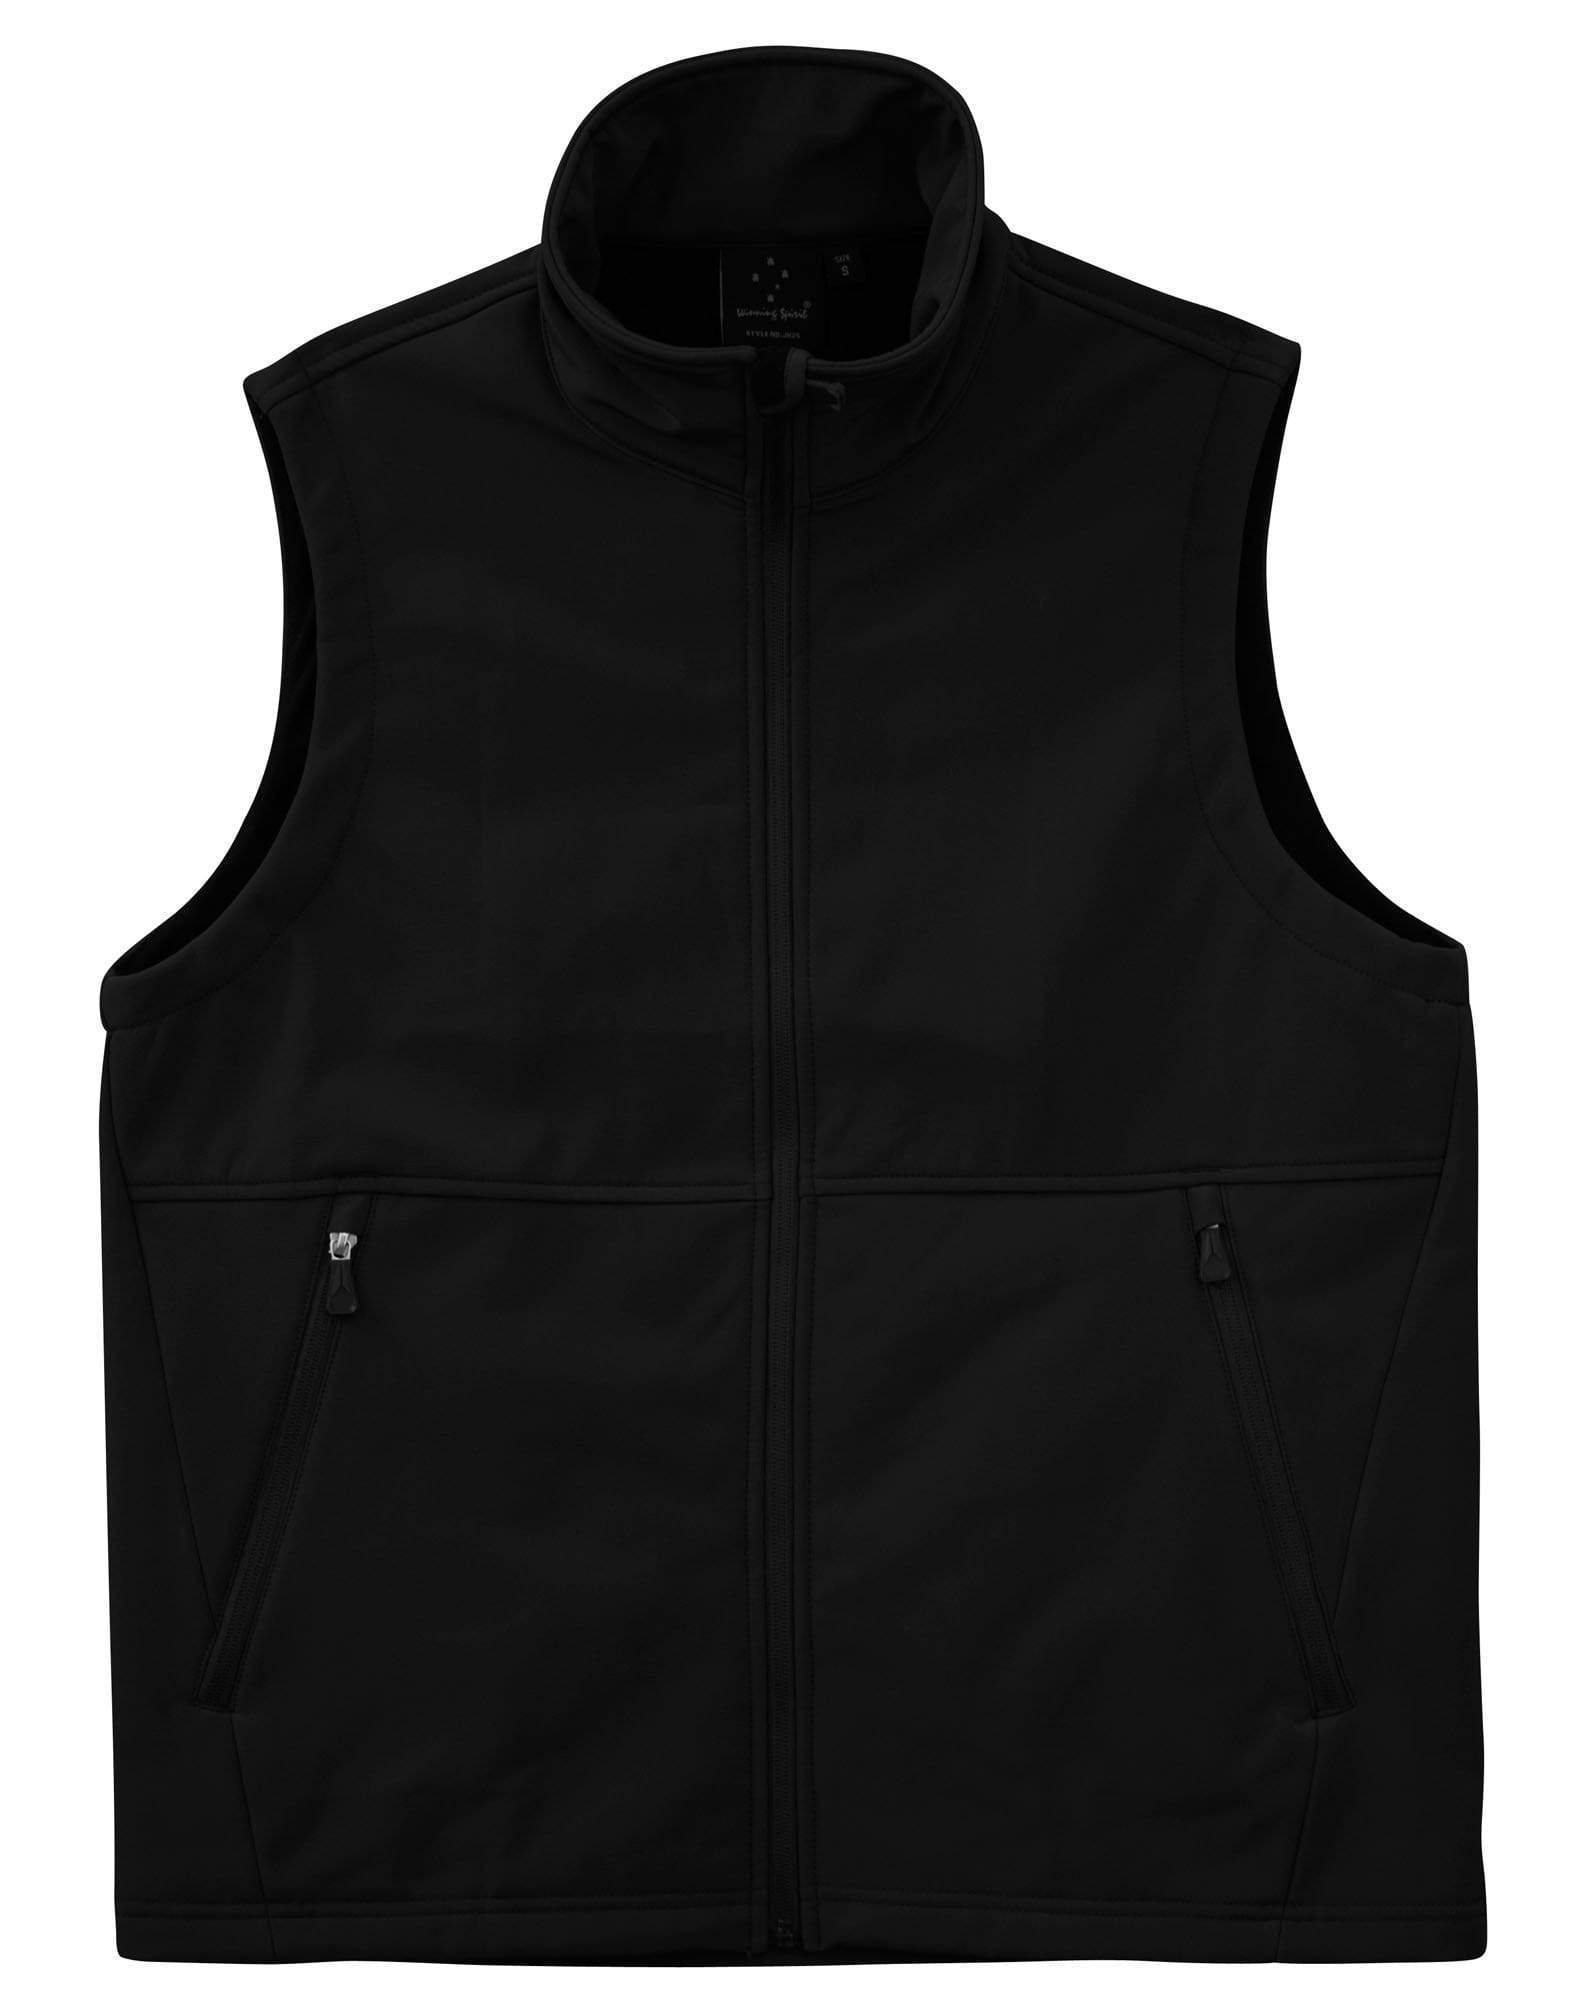 Winning Spirit Casual Wear Black / S WINNING SPIRIT Softshell Vest Men's JK25